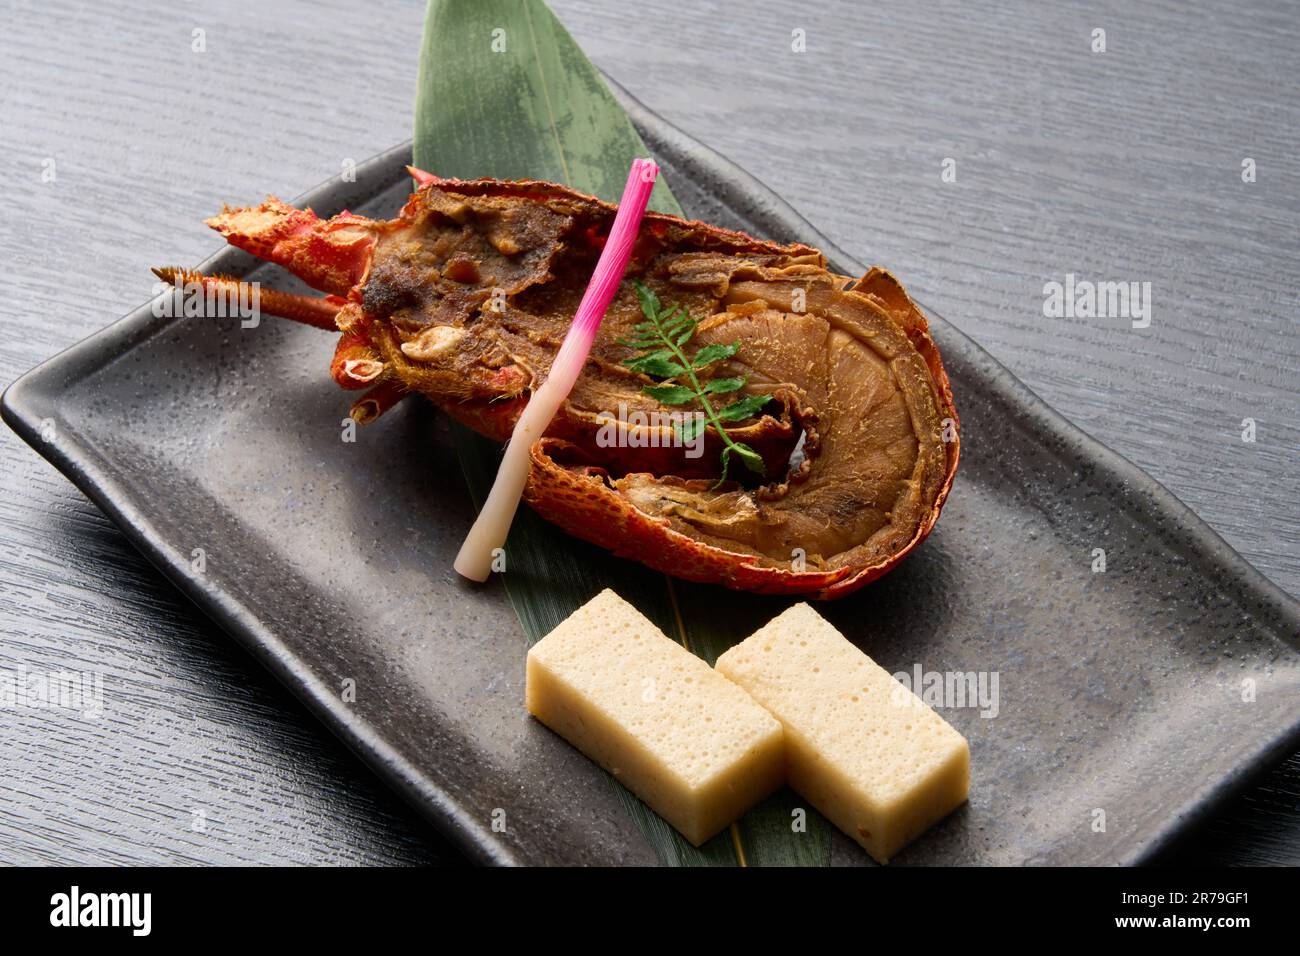 Cuisine japonaise, homard ISE grillé sur carrelage Banque D'Images